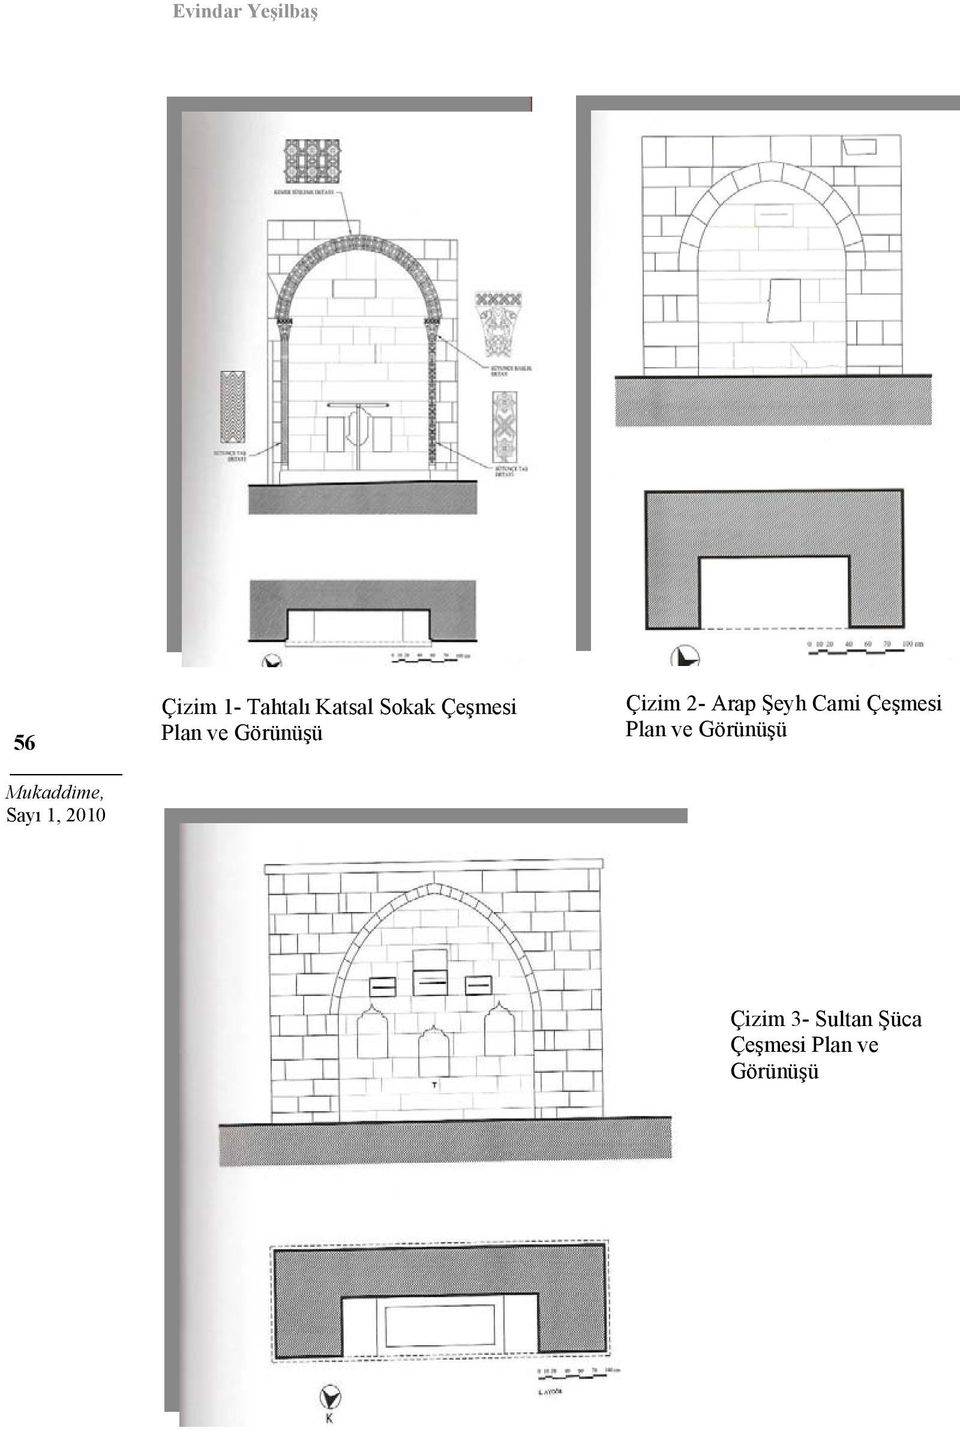 Çizim 2- Arap Şeyh Cami Çeşmesi Plan ve